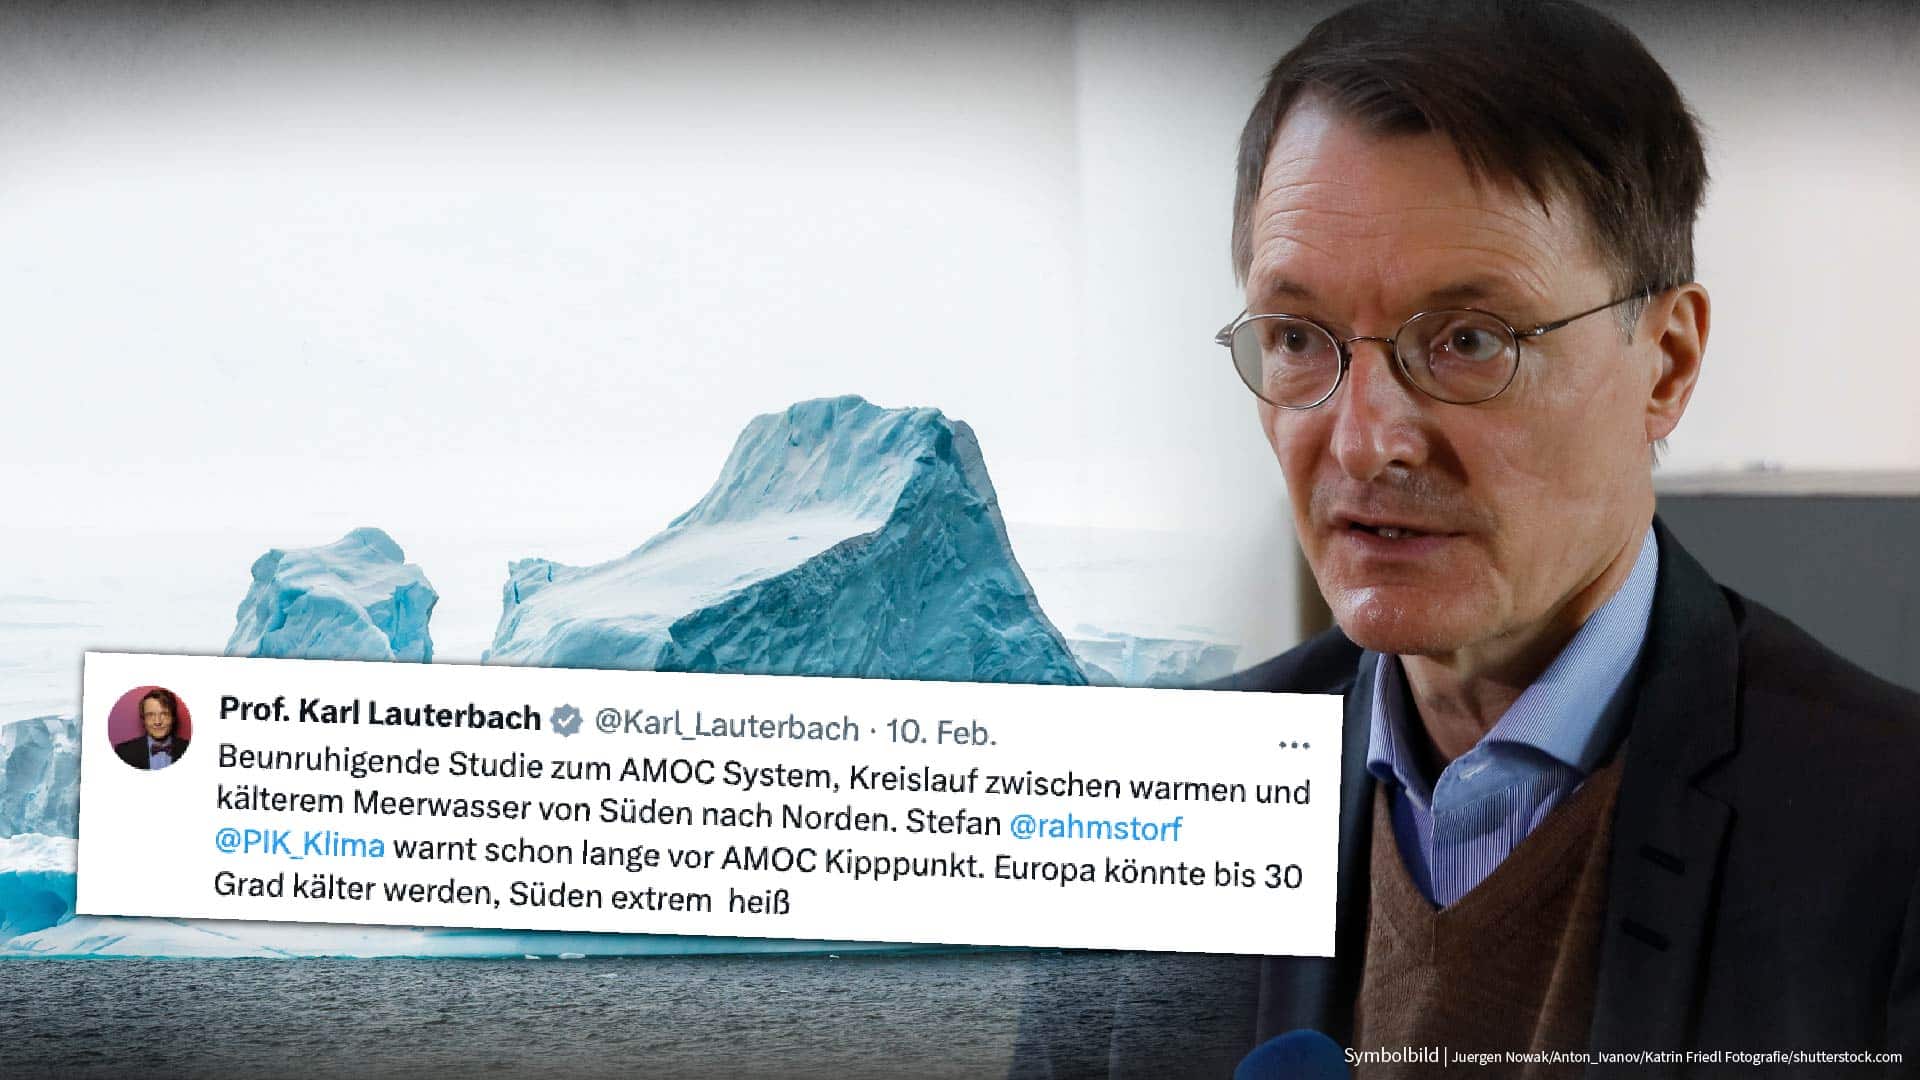 Hilfe, Lauterbach jetzt völlig übergeschnappt: „Europa könnte 30 Grad KÄLTER werden!“